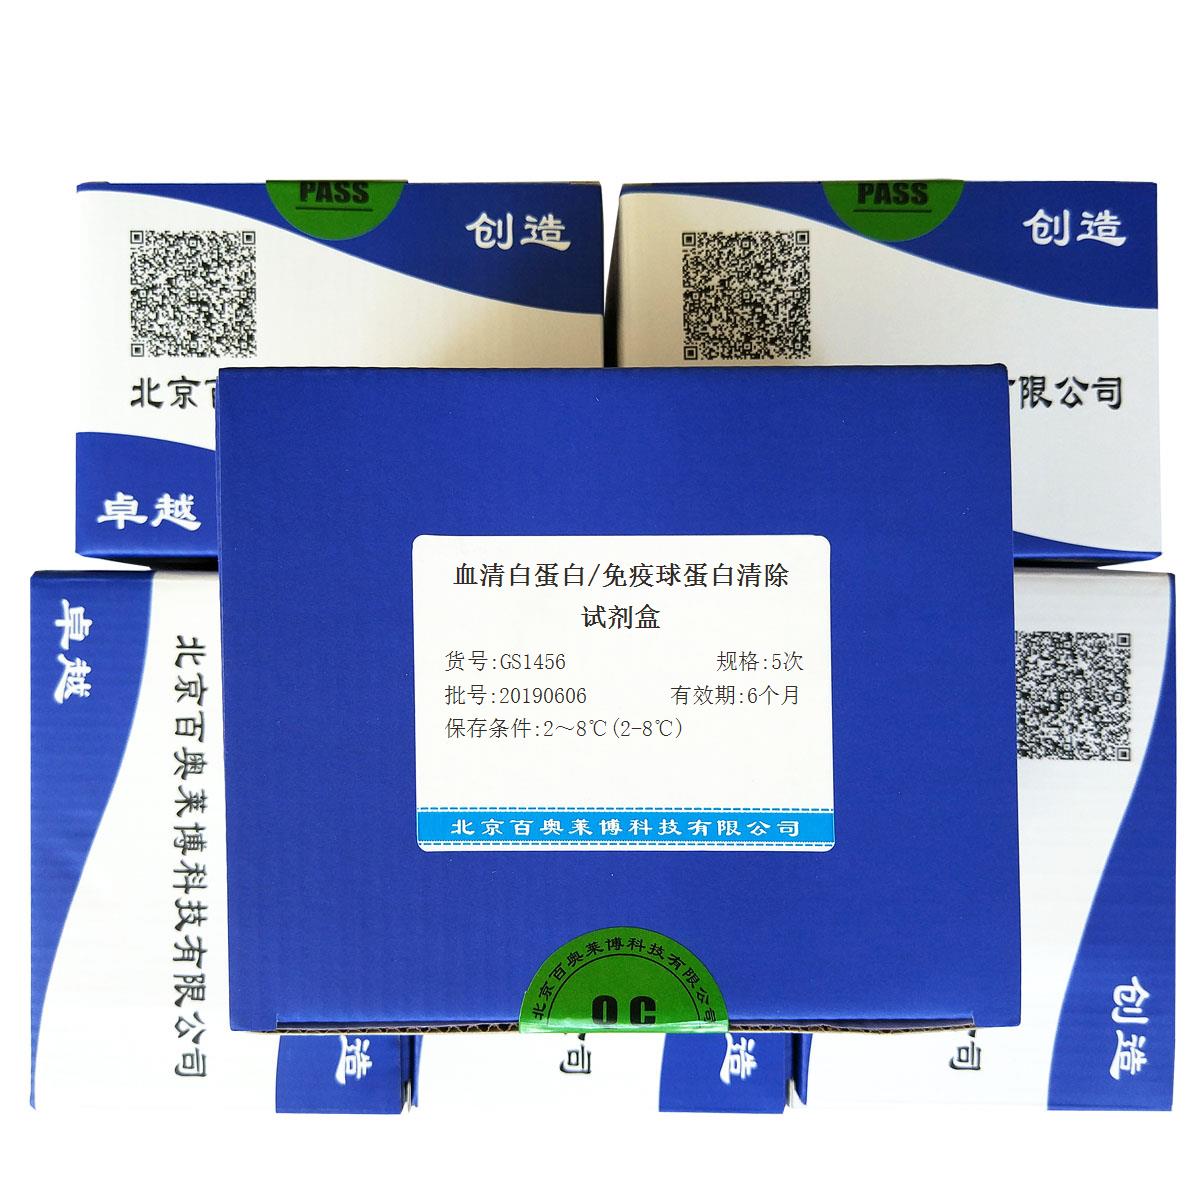 血清白蛋白/免疫球蛋白清除试剂盒北京厂家